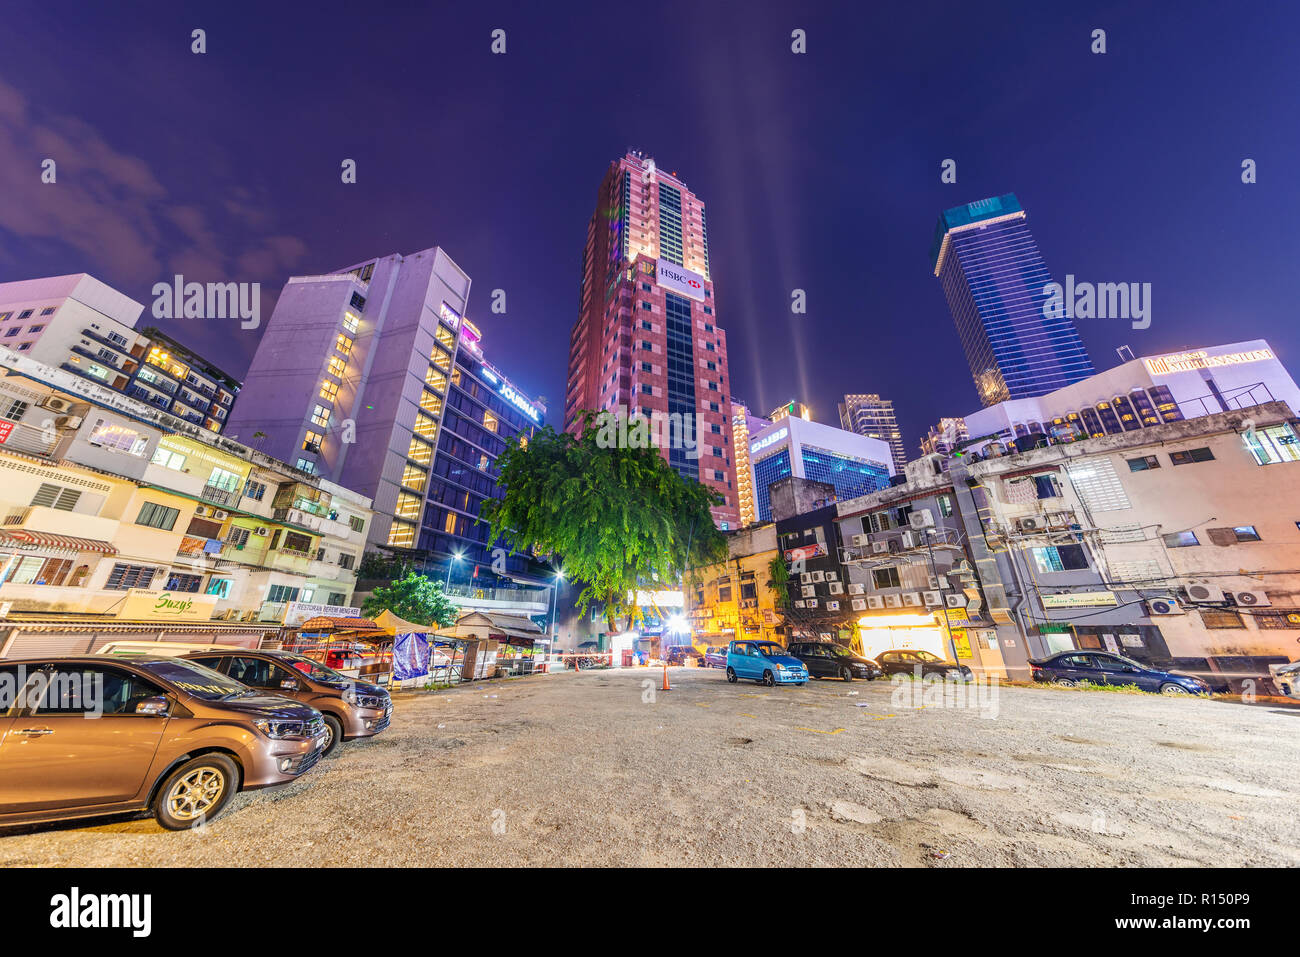 KUALA LUMPUR, Malesia - 23 Luglio: vista notturna della città edifici nell'area del centro cittadino nei pressi di Bukit Bintang sulla luglio 23, 2018 a Kuala Lumpur Foto Stock